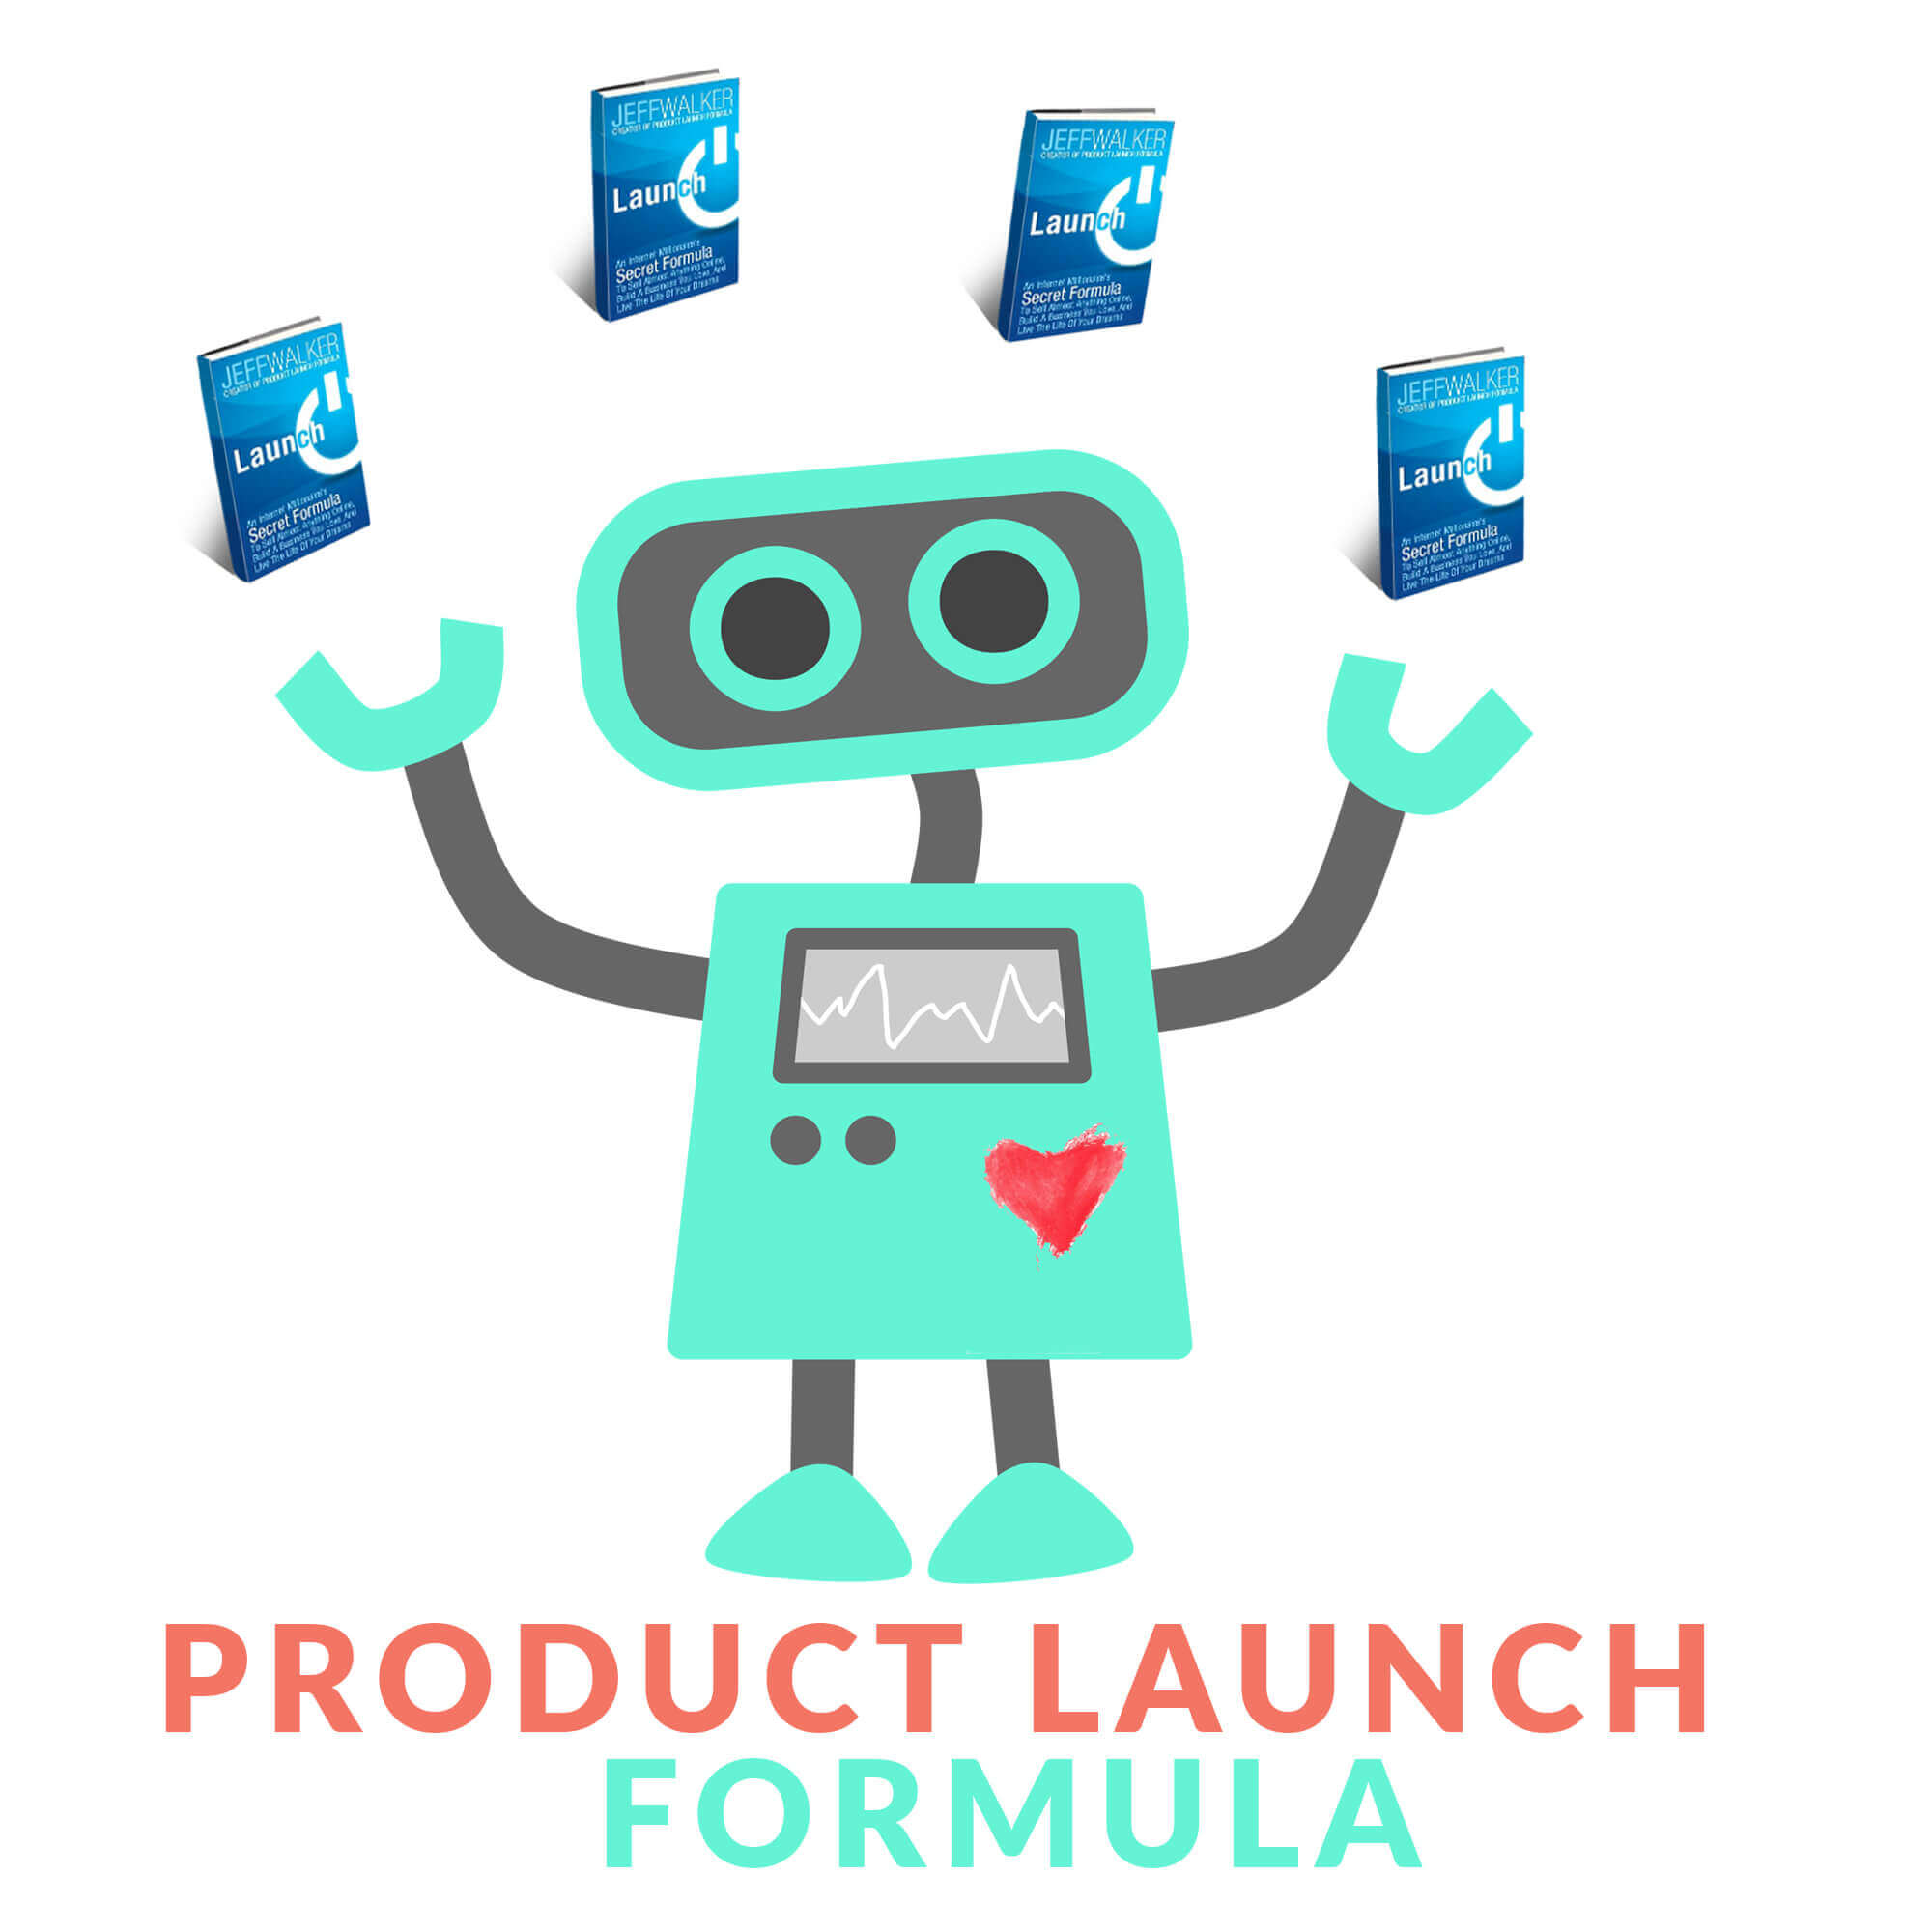 PLF PORTADA - Lleva a cabo lanzamientos exitosos de tus productos con el sistema Product Launch Formula